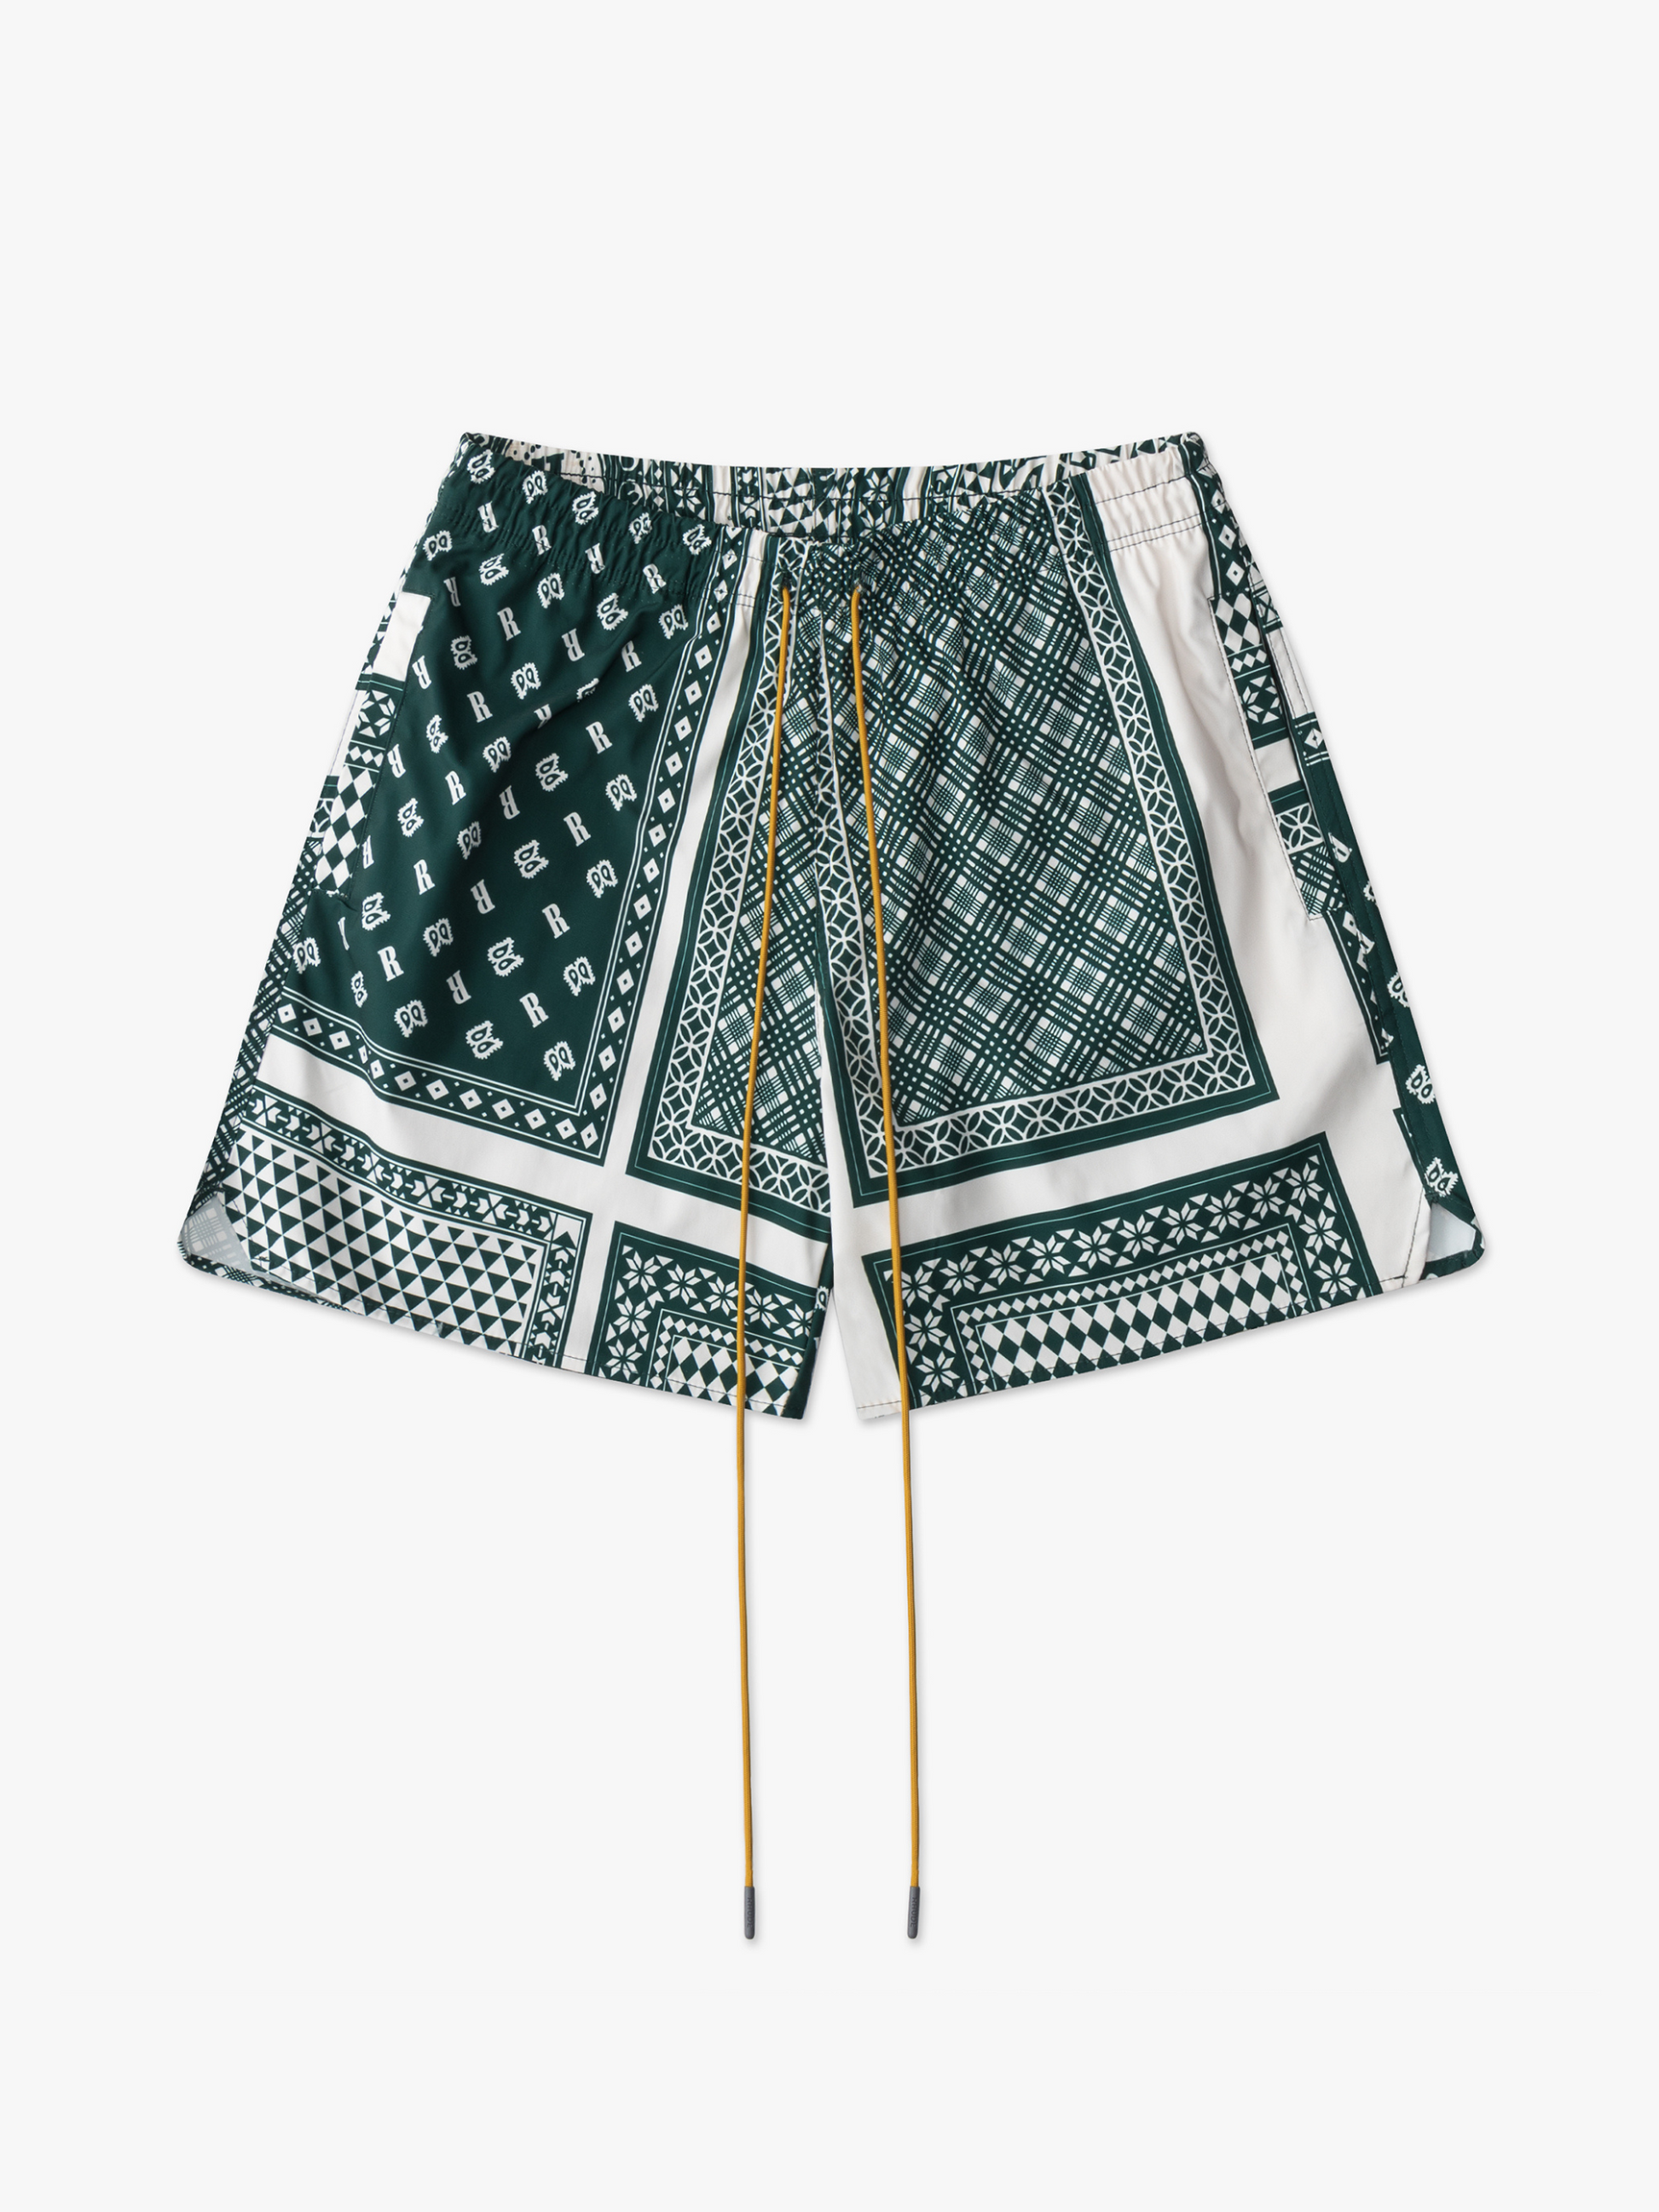 Louis Vuitton Printed Nylon Swim Shorts Green. Size Xs